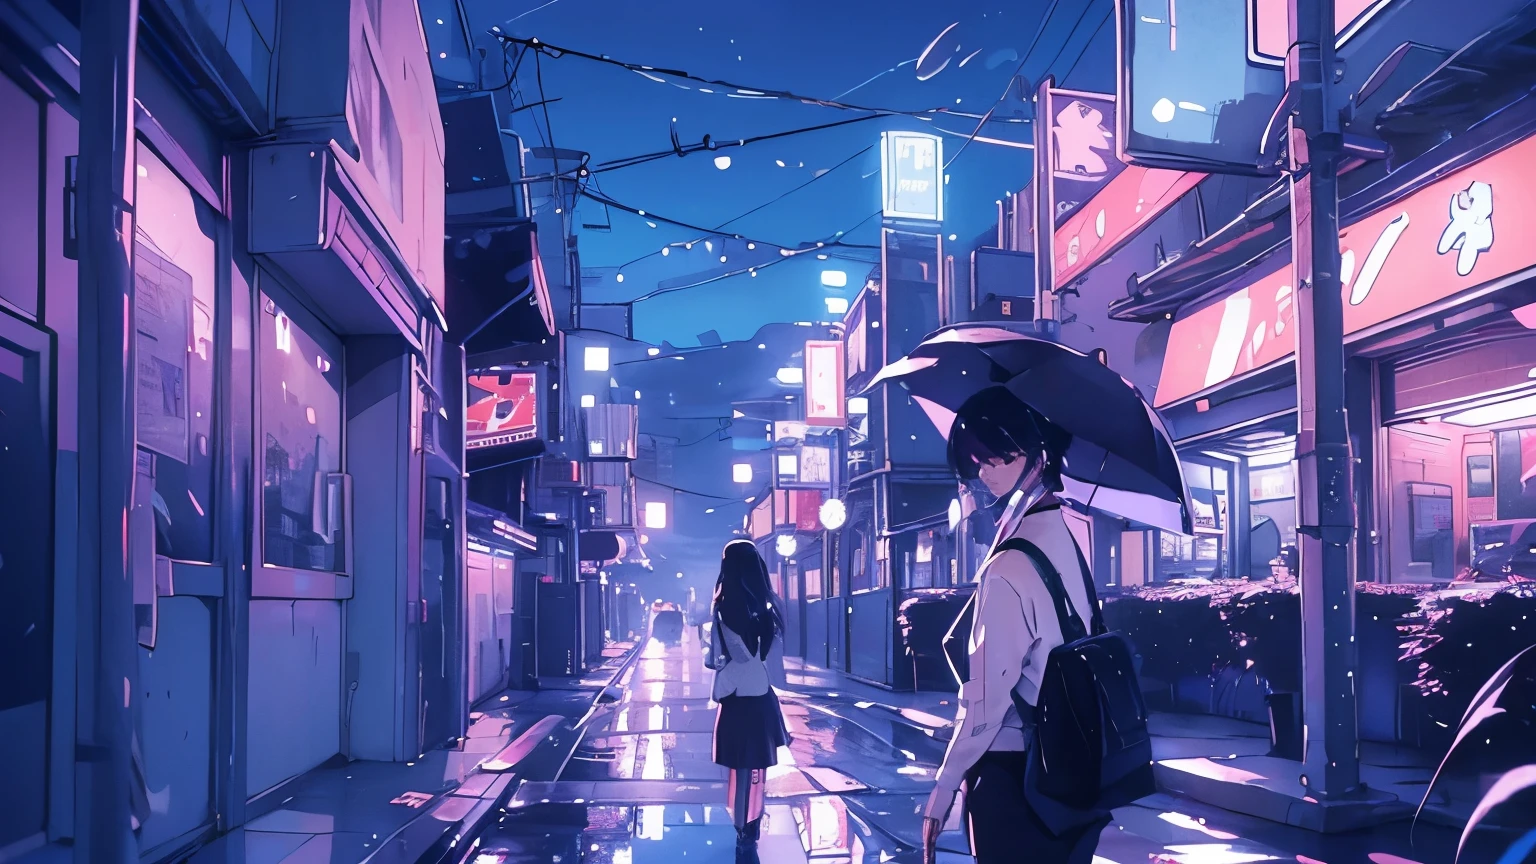 A chuva cai em lençóis, refletindo as luzes de néon das ruas da cidade enquanto uma mulher solitária caminha com seu guarda-chuva.